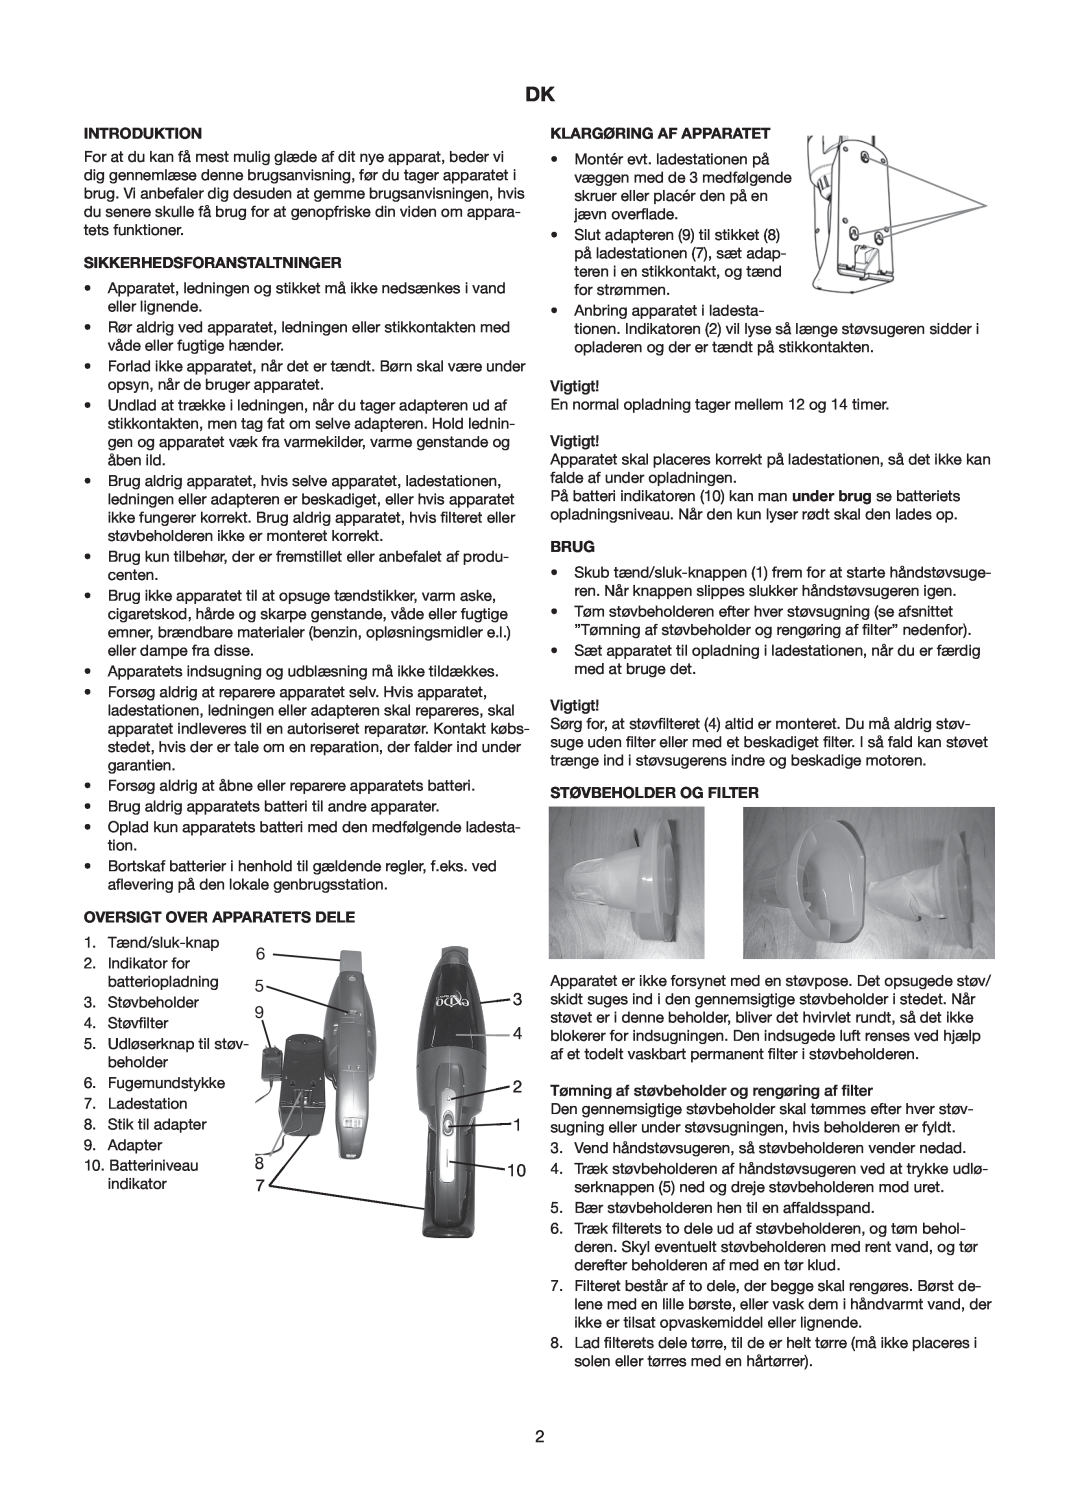 Melissa 240-112/113 manual Introduktion, Klargøring Af Apparatet, Sikkerhedsforanstaltninger, Brug, Støvbeholder Og Filter 